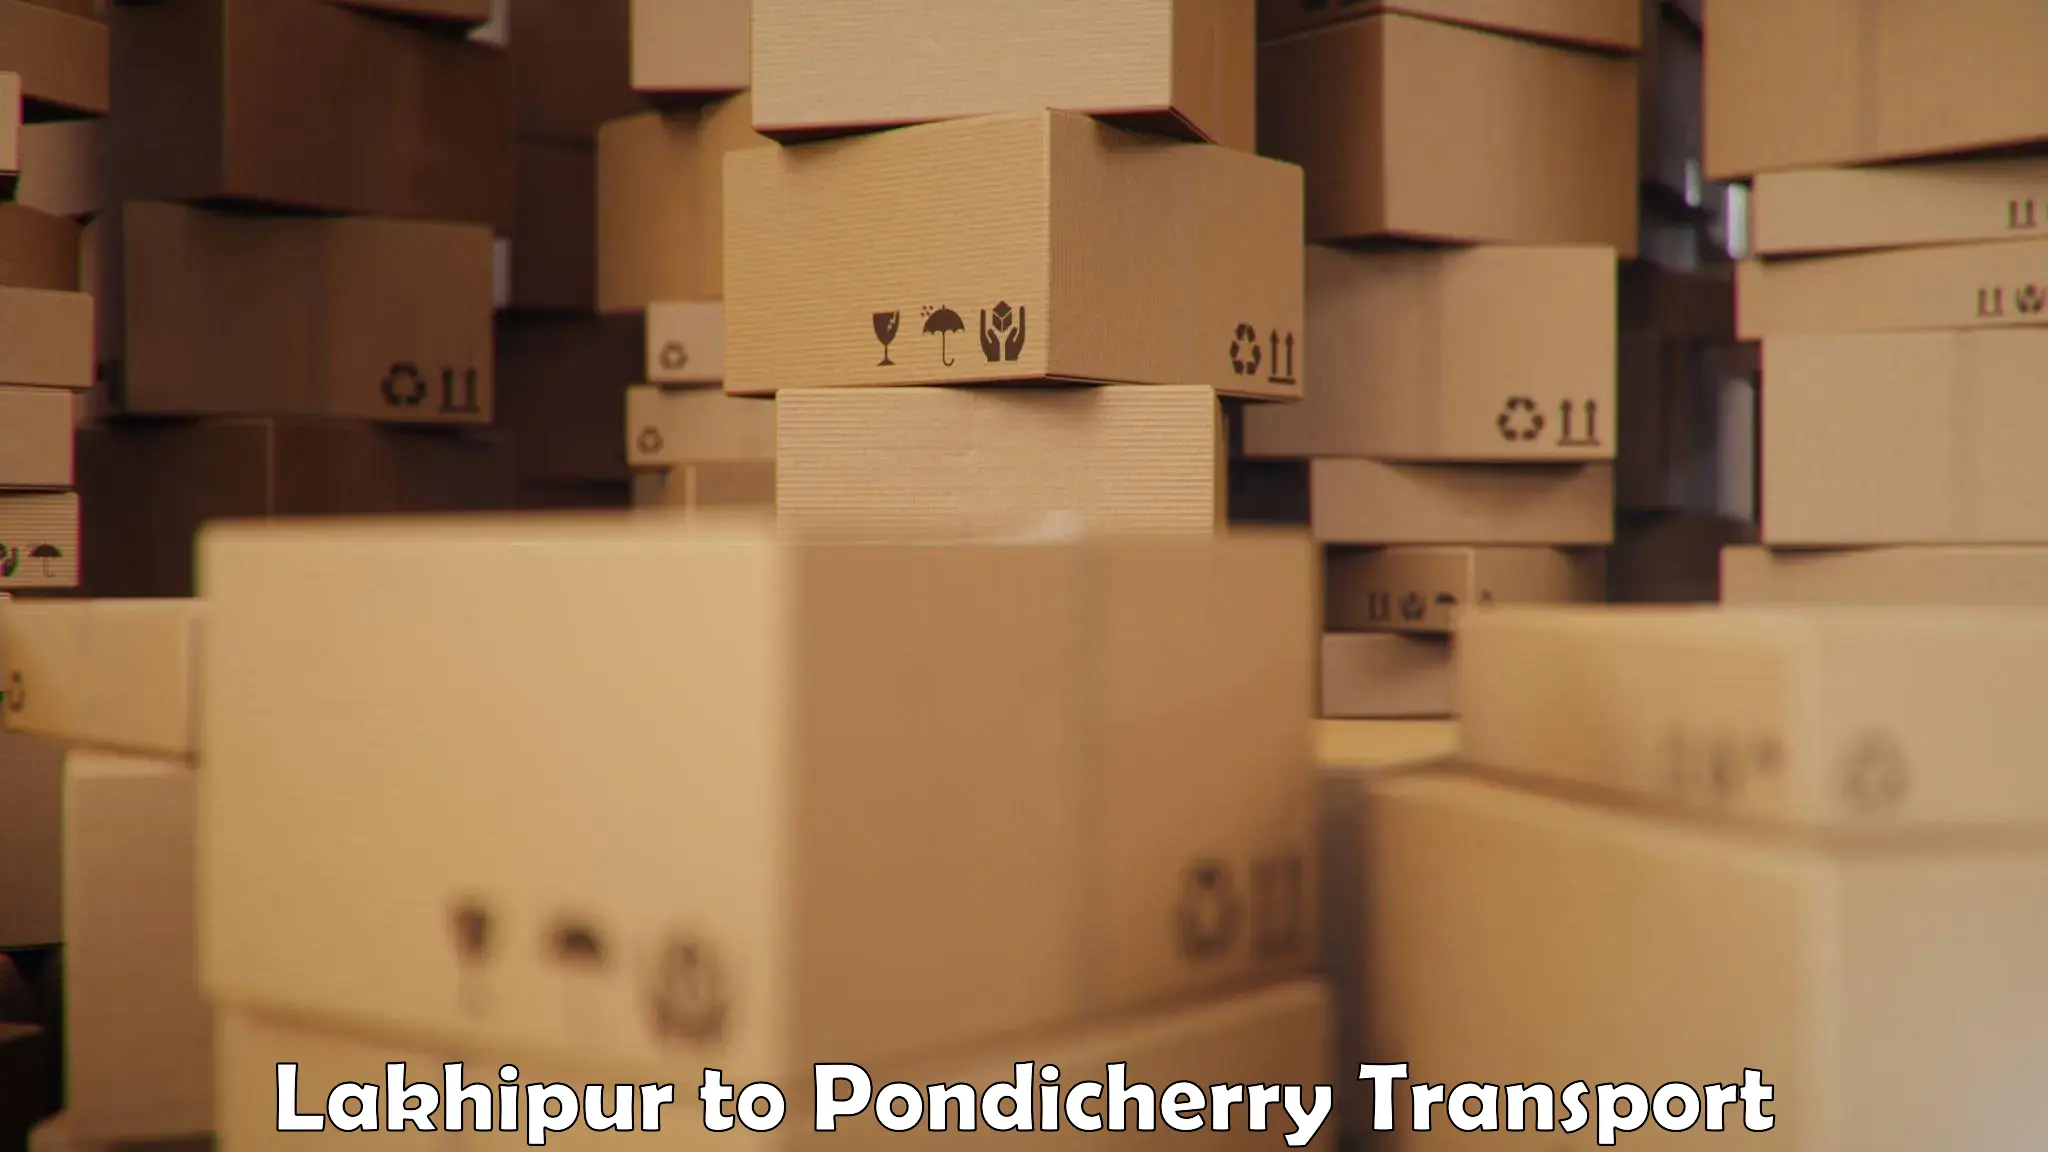 Furniture transport service Lakhipur to Metttupalayam